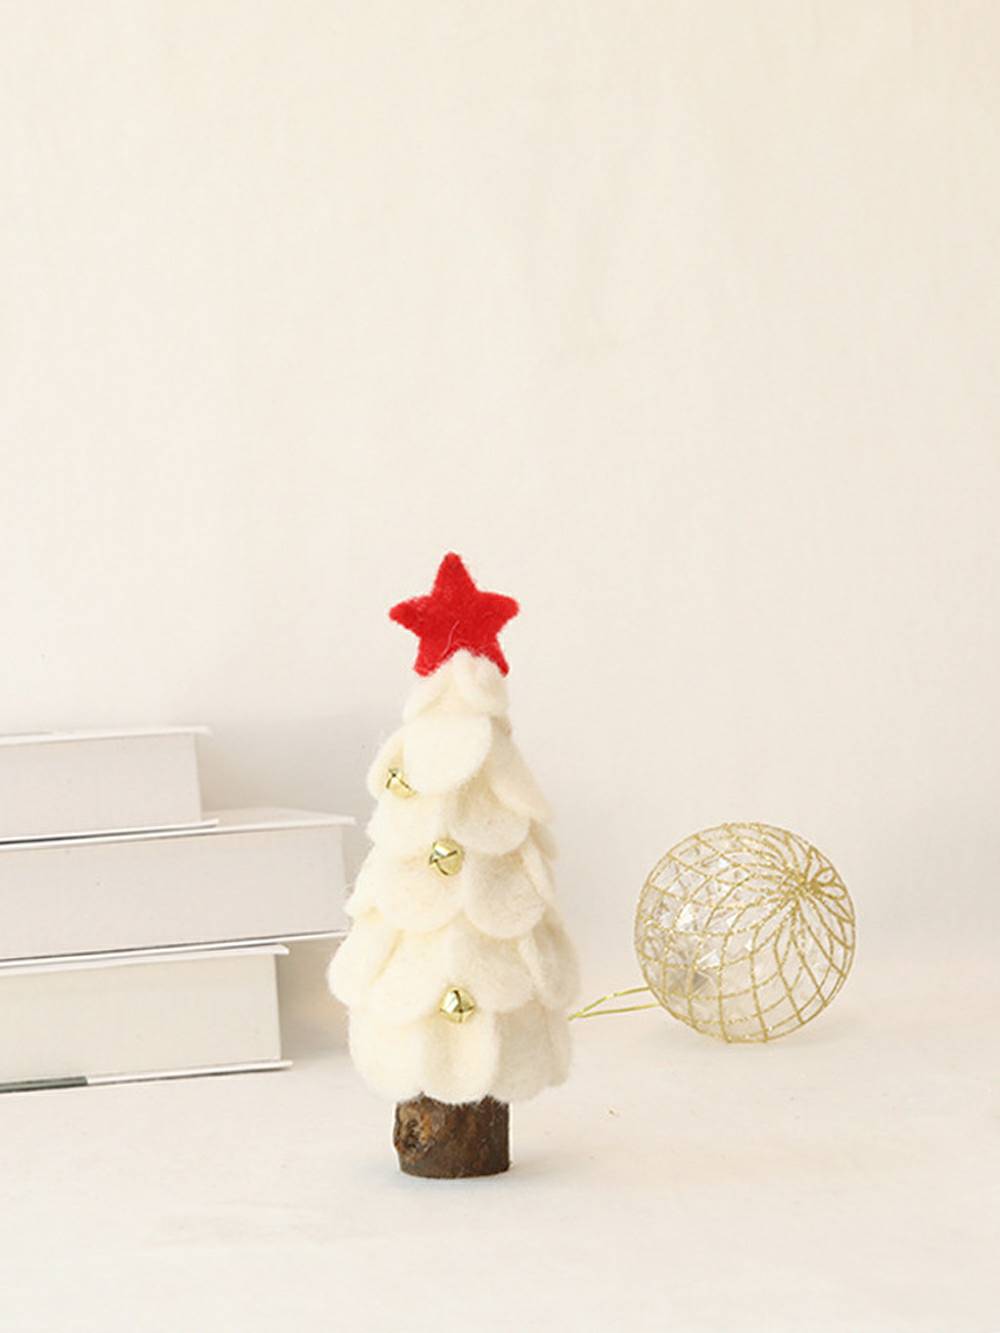 Jolie décoration d'arbre de Noël en feutre